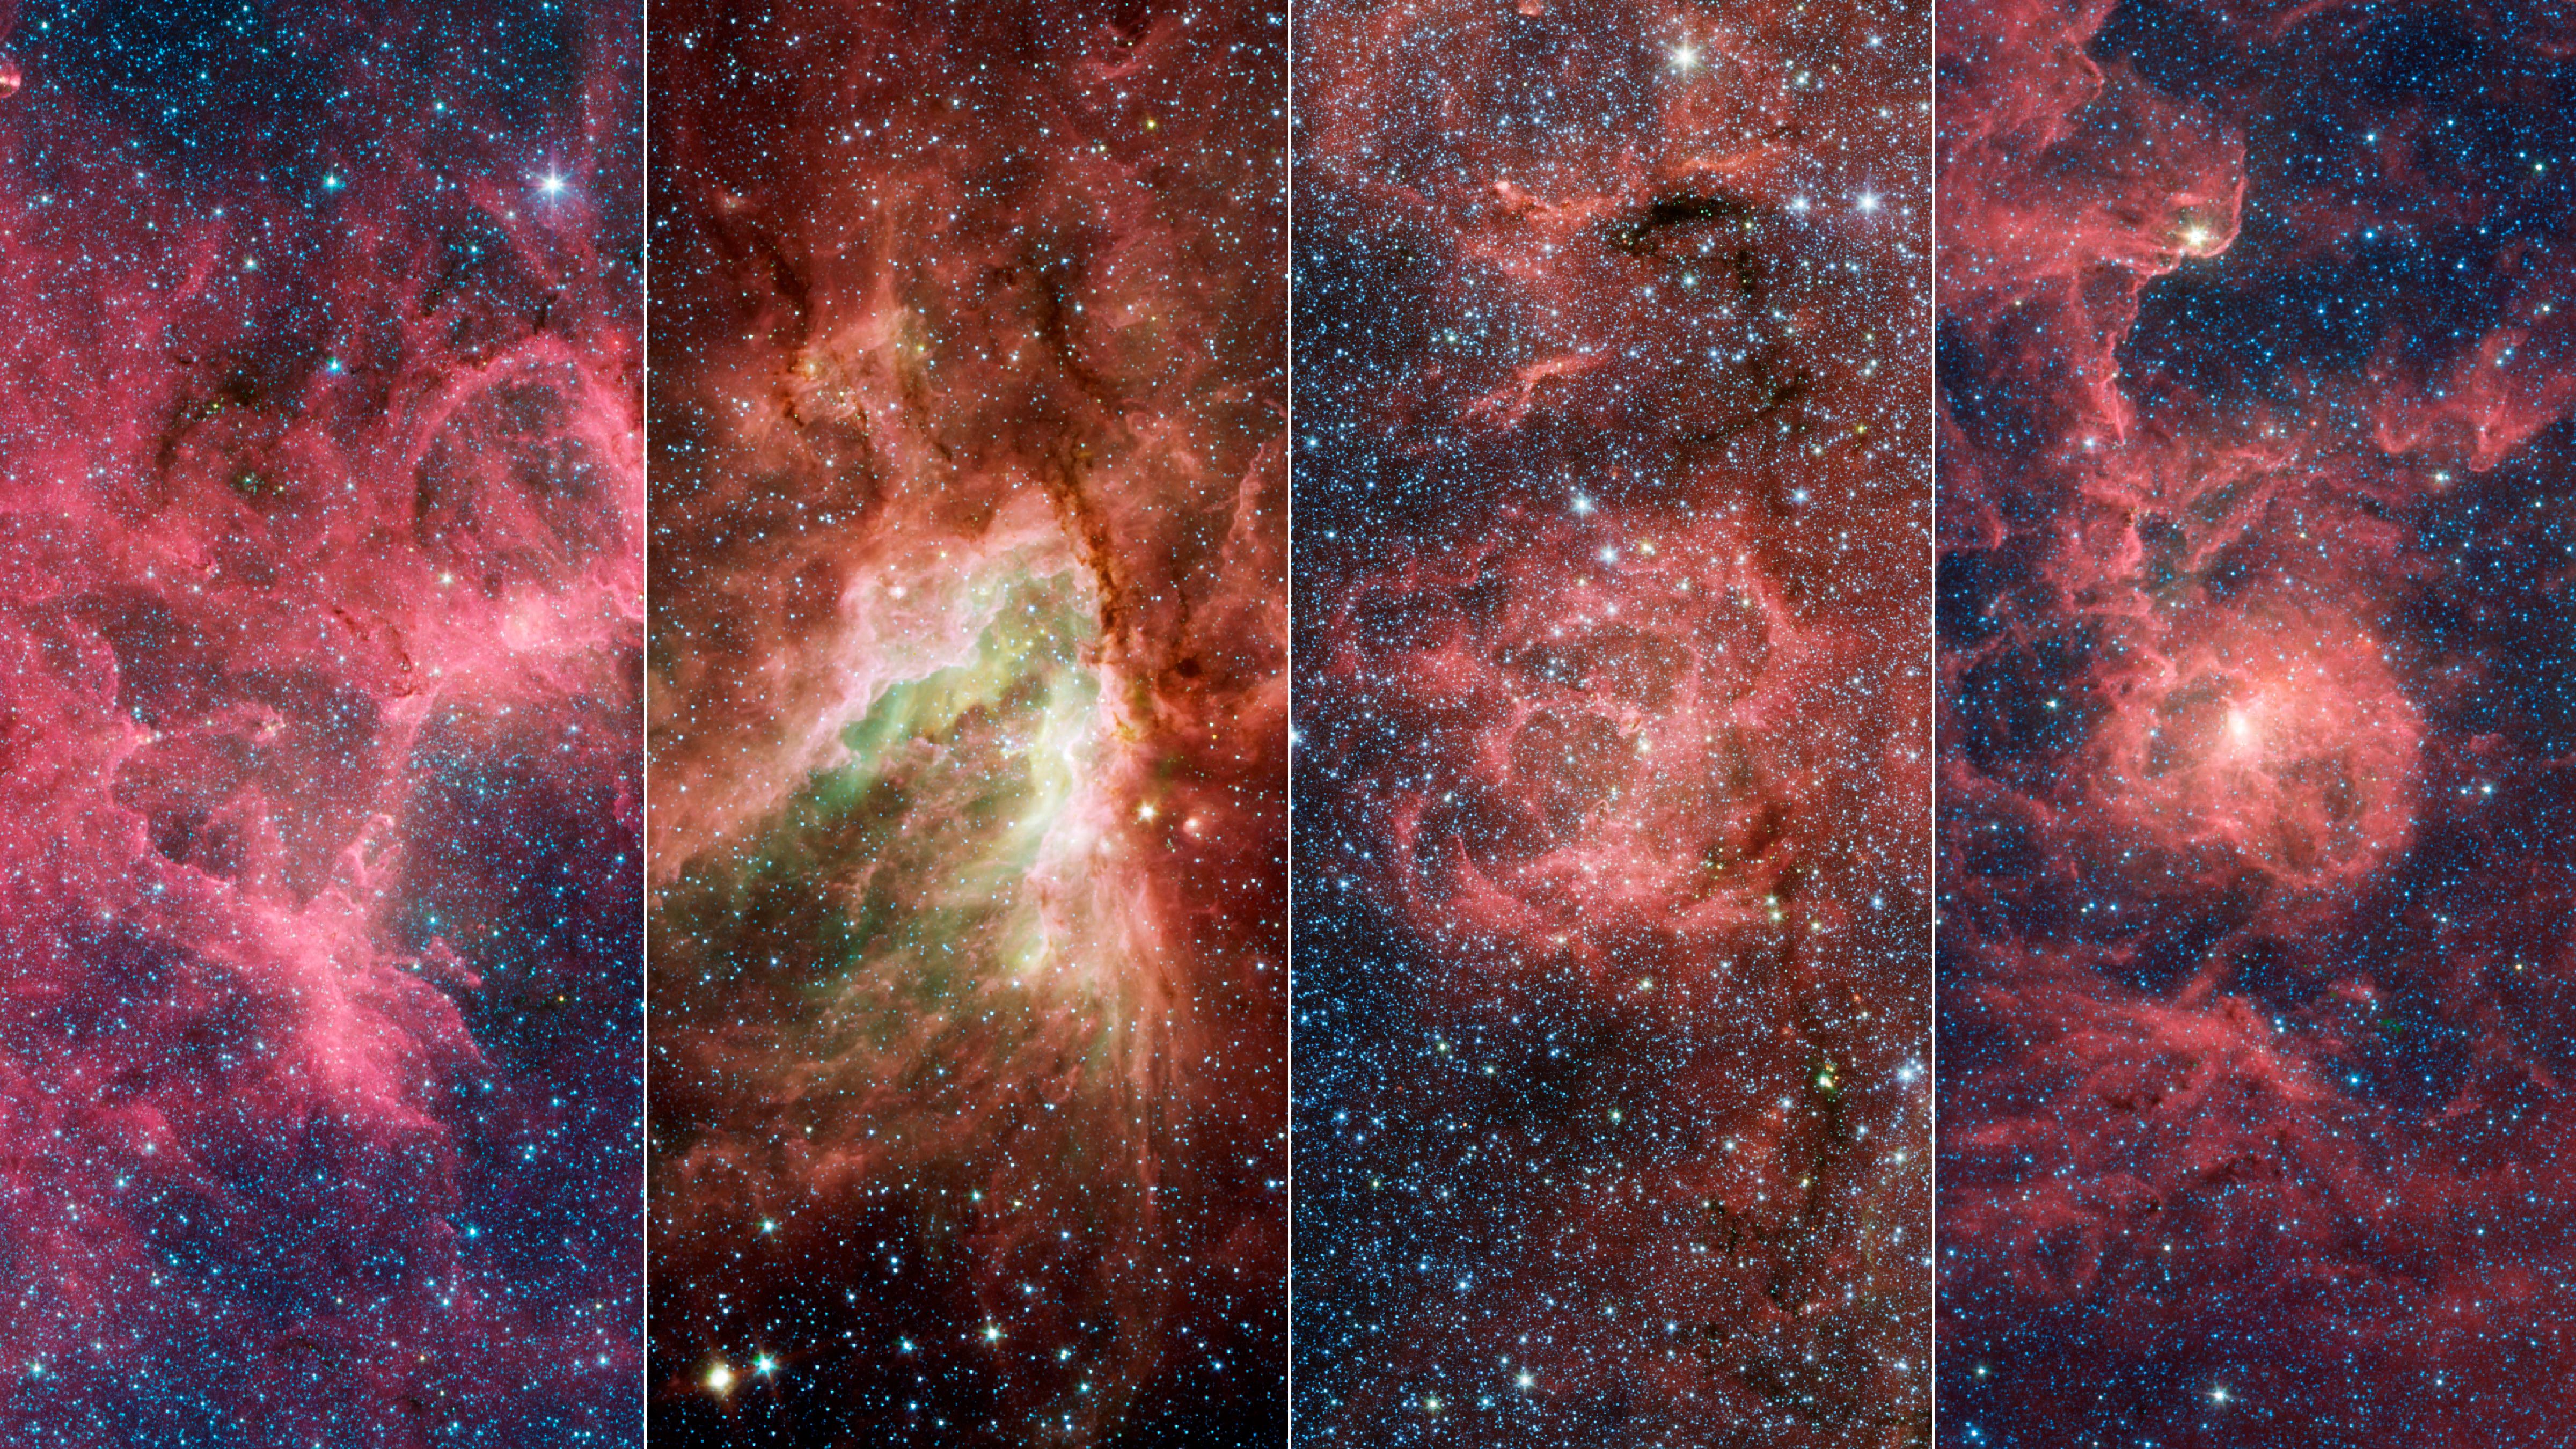 Od lewej do prawej – cztery mgławice: Orzeł (zawiera Filary Stworzenia), Omega, Trójlistna Koniczyna, Laguna. Mgławice są obłokami gazu i pyłu, w których powstają gwiazdy. W latach 50-tych XX wieku astronomowie zgrubnie wyznaczyli odległości do niektórych gwiazd w tych mgławicach i na tej podstawie wywnioskowali, że istnieje Ramię Strzelca. To był jeden z pierwszych dowodów na spiralną strukturę naszej Galaktyki. Natomiast w omawianej tutaj publikacji z 2021 roku, astronomowie pokazali, że te mgławice tworzą podstrukturę w ramieniu spiralnym, która jest nachylona pod innym kątem niż reszta ramienia. Źródło: NASA/JPL-Caltech